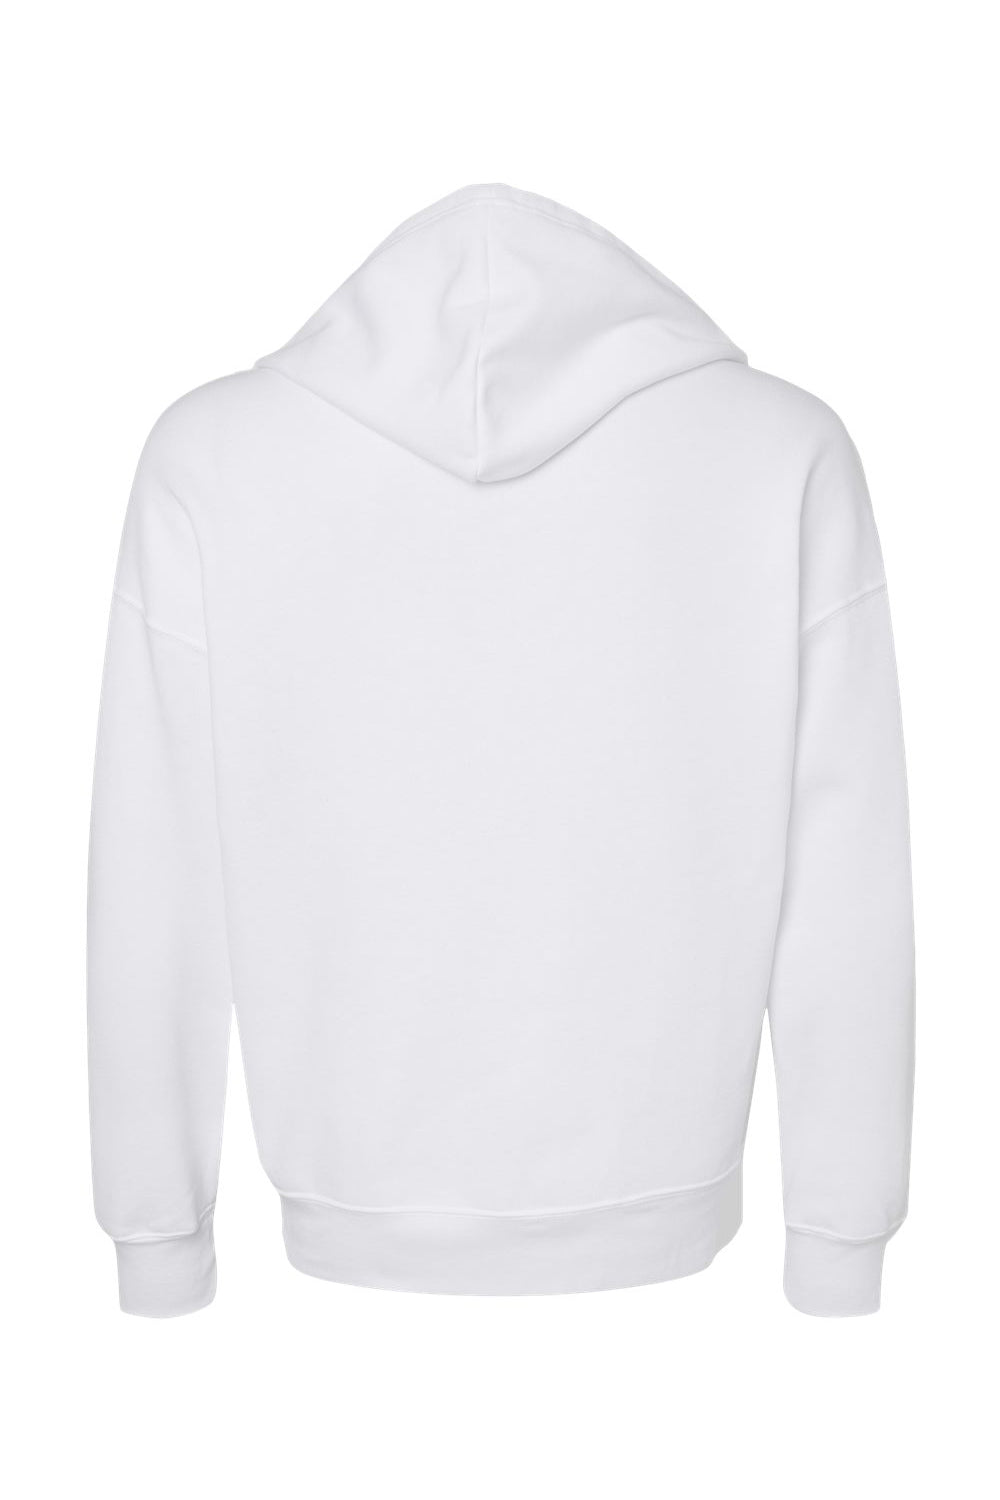 Bella + Canvas 3759 Mens Sponge Fleece Full Zip Hooded Sweatshirt Hoodie White Flat Back